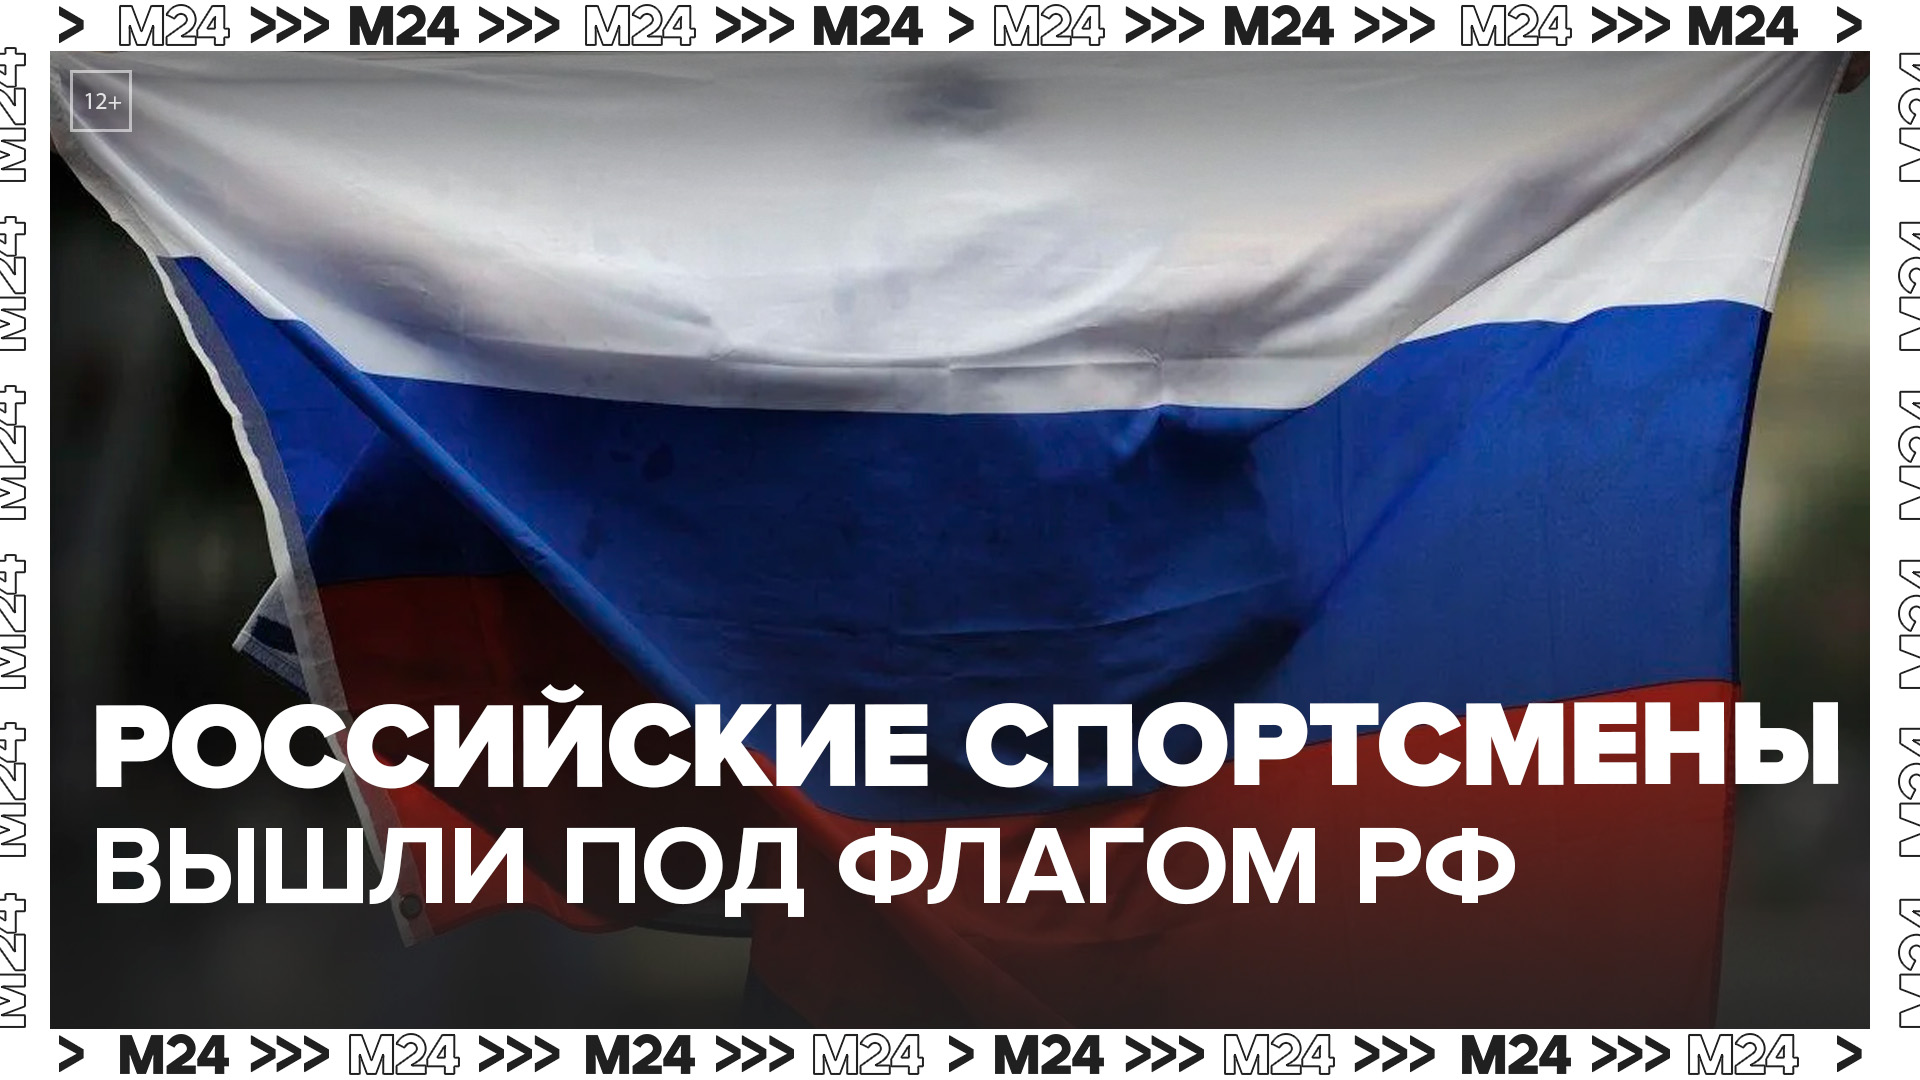 Российские спортсмены развернули национальный флаг на открытии Боливарианских игр - Москва 24